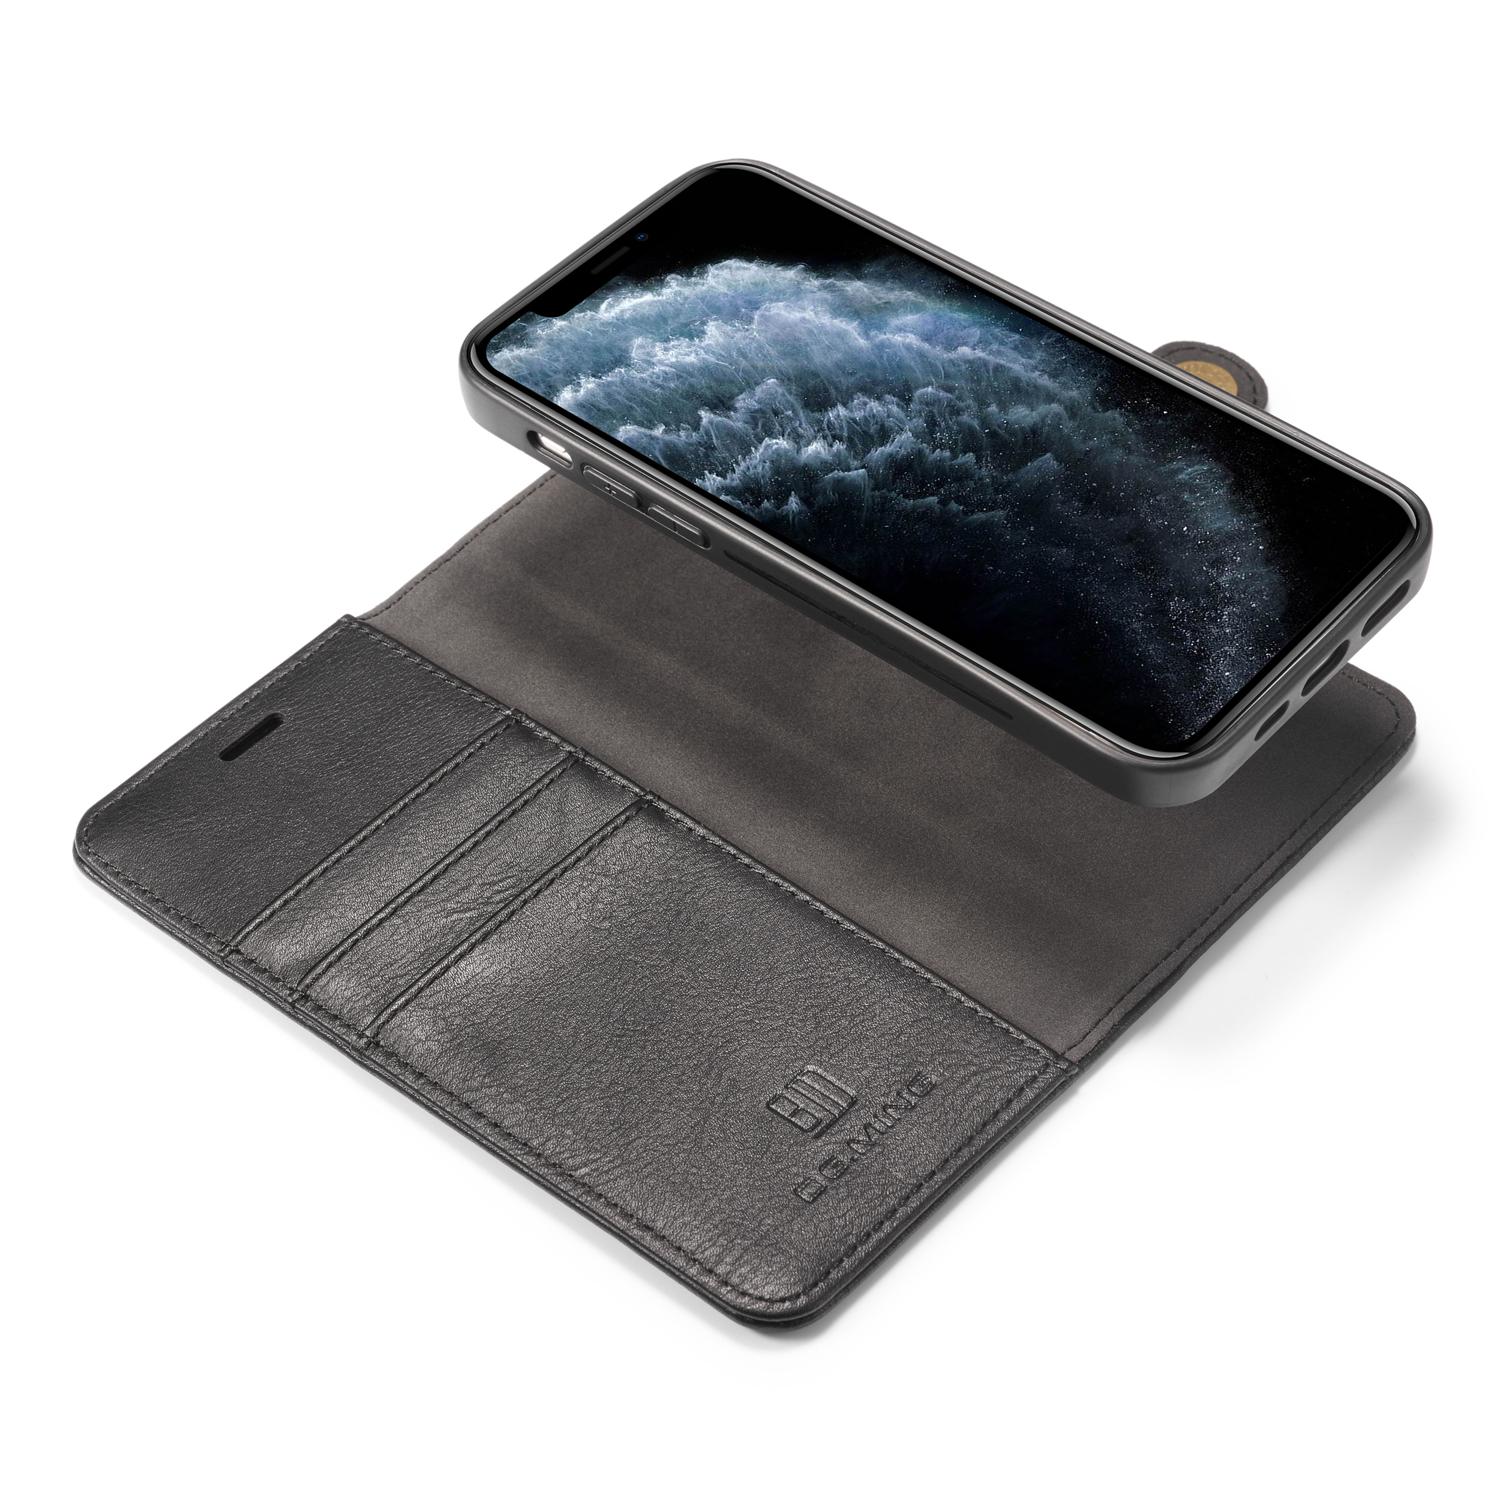 iPhone 12/12 Pro Plånboksfodral med avtagbart skal, svart